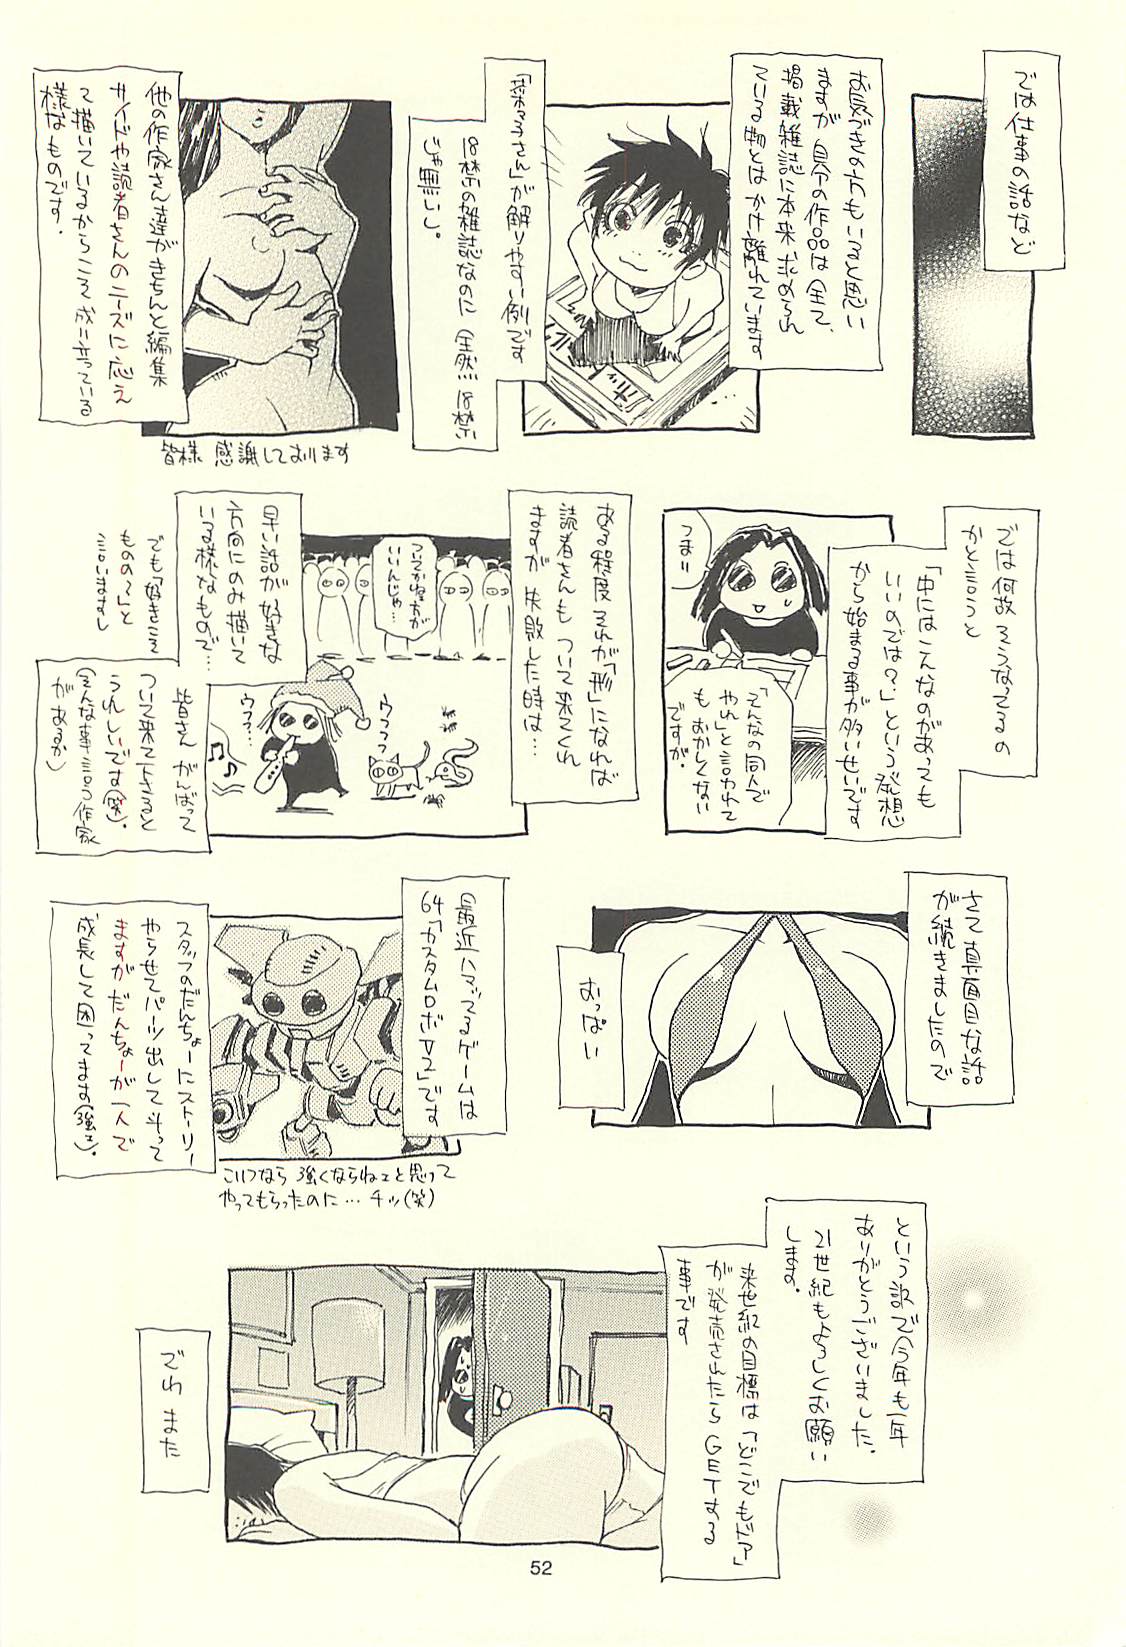 (C60) [NOUZUI MAJUTSU, NO-NO'S (Kawara Keisuke, Kanesada Keishi)] Nouzui Kawaraban Hinichijoutekina Nichijou I (C60) [脳髄魔術, NO-NO'S (瓦敬助, 兼処敬士)] 脳髄瓦版 非日常的な日常I